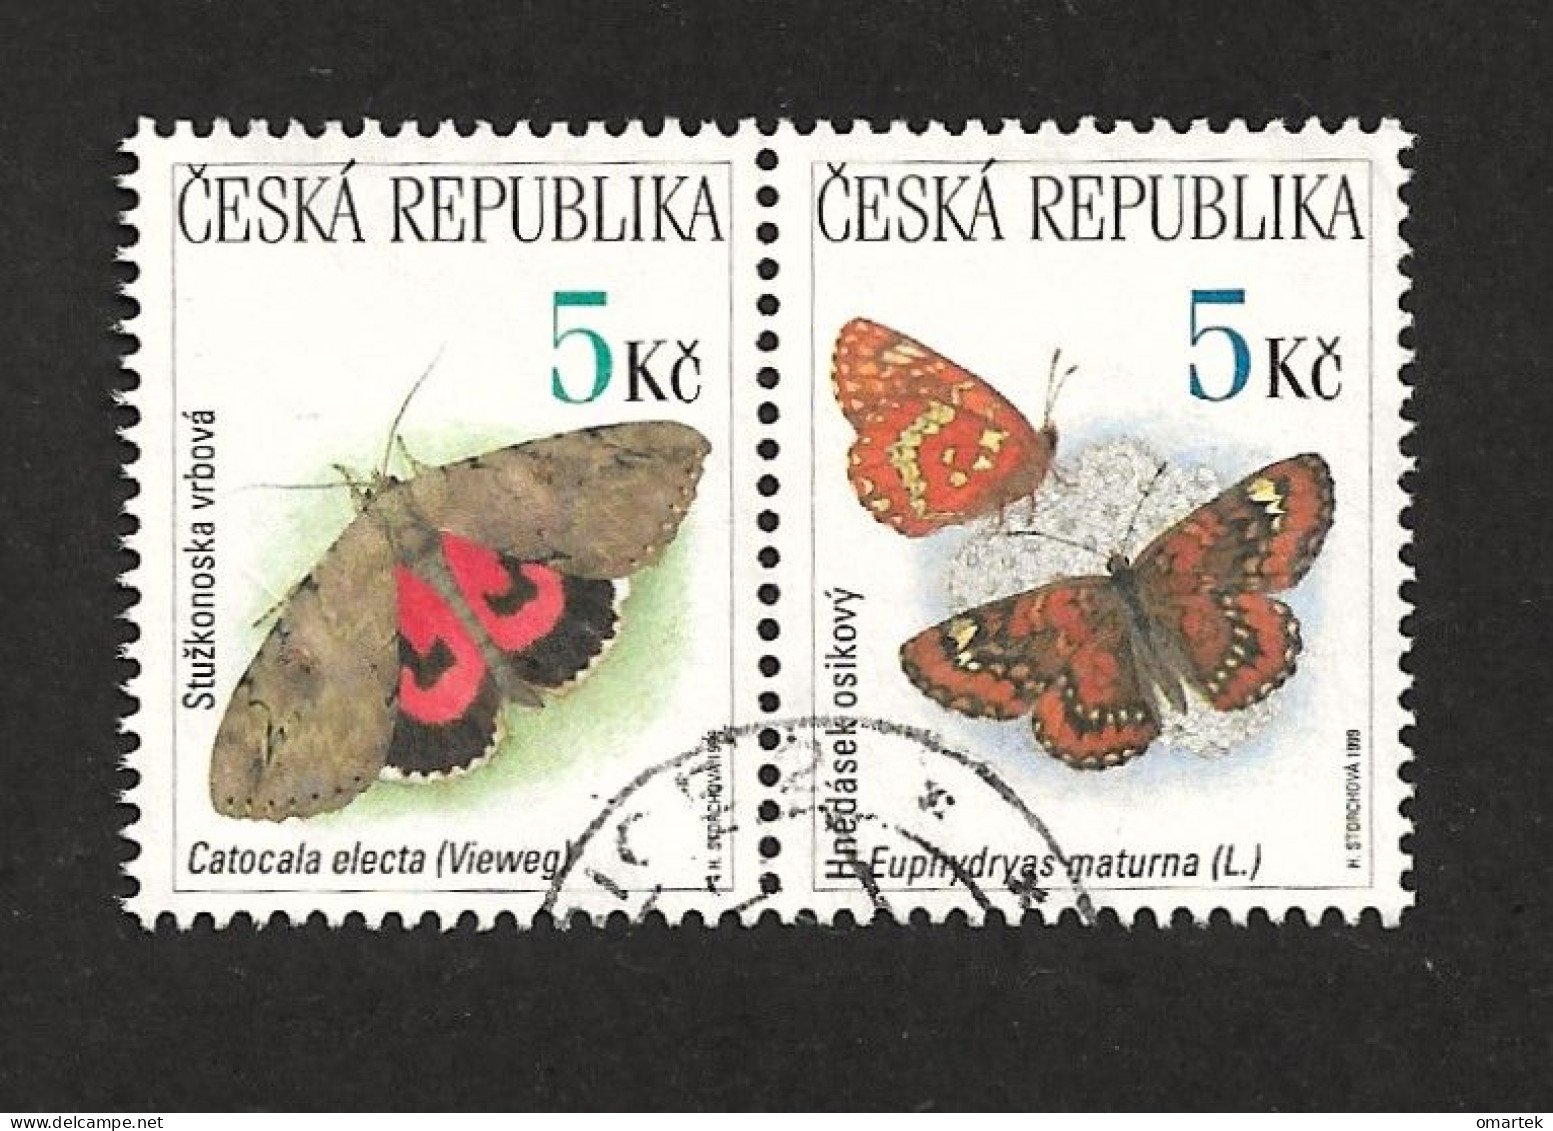 Czech Republic 1999 ⊙ Mi 209, 210 Sc 3083, 3084 Butterflies, Schmetterling. Tschechische Republik - Oblitérés